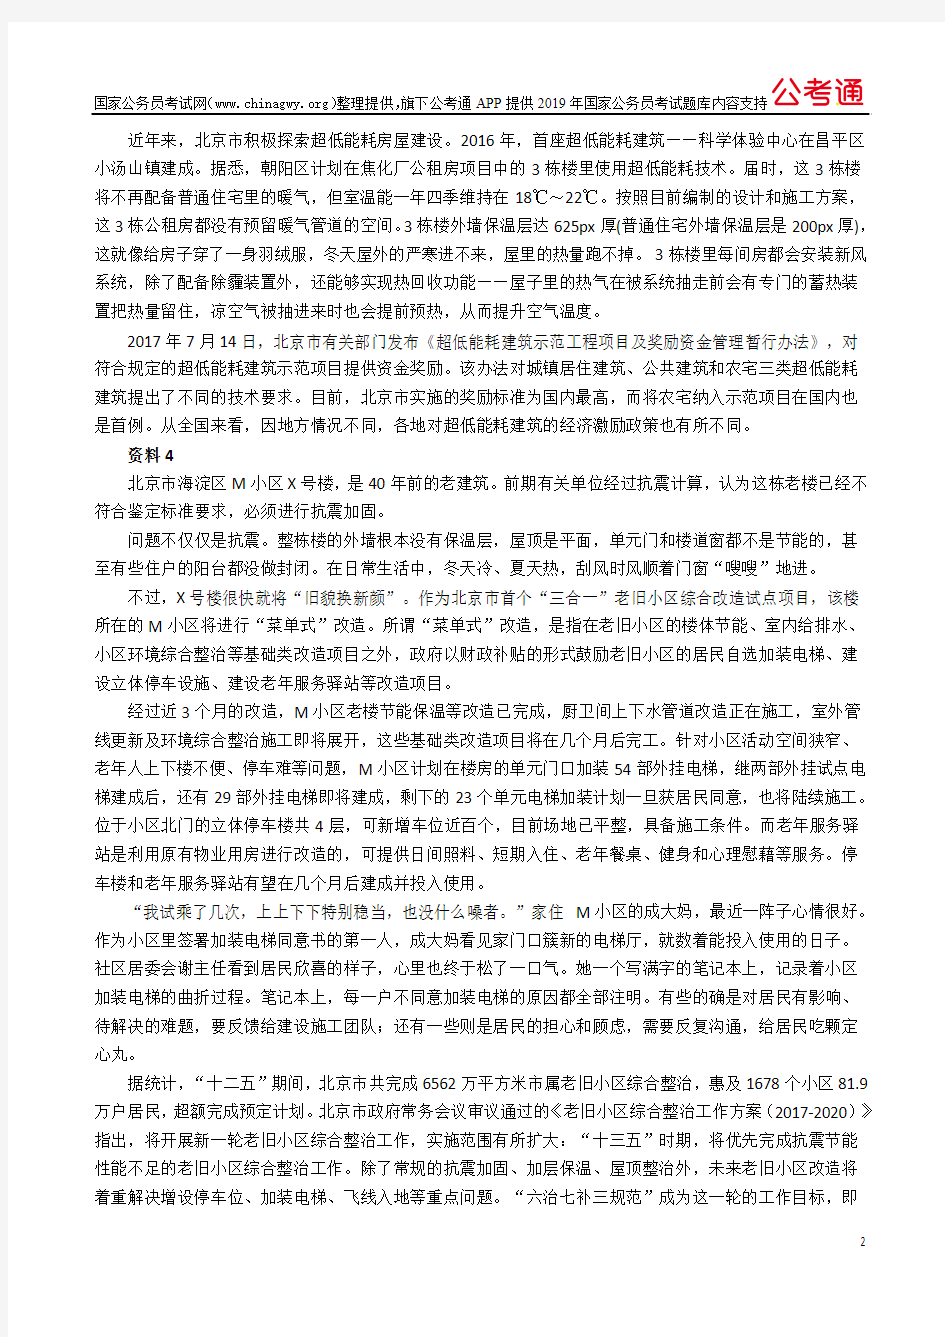 2018年北京公务员考试申论真题及答案